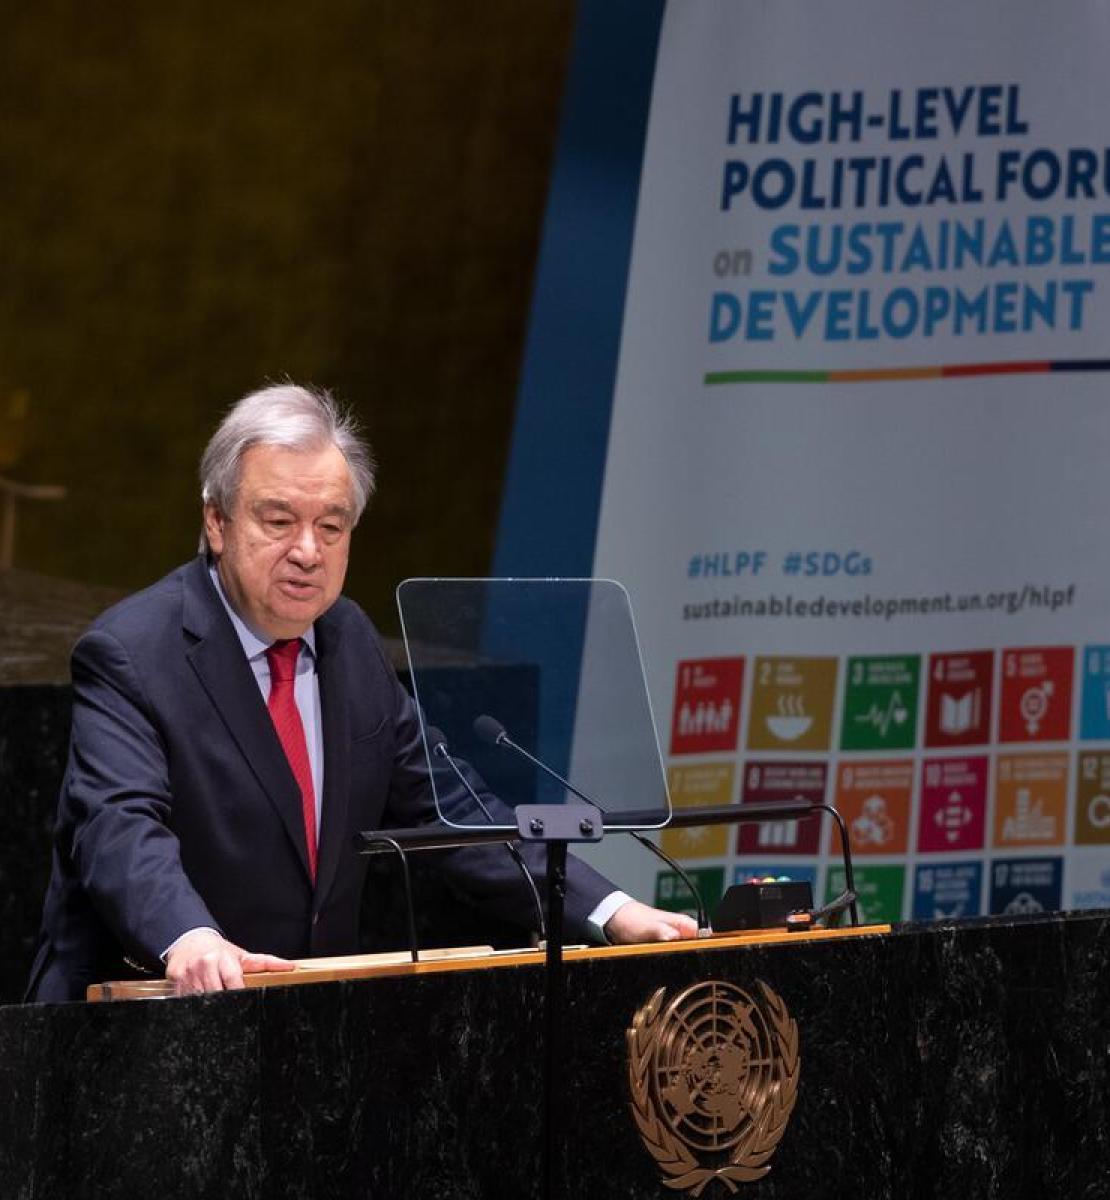 El Secretario General de las Naciones Unidas interviene en la apertura del foro político de alto nivel sobre desarrollo sostenible.